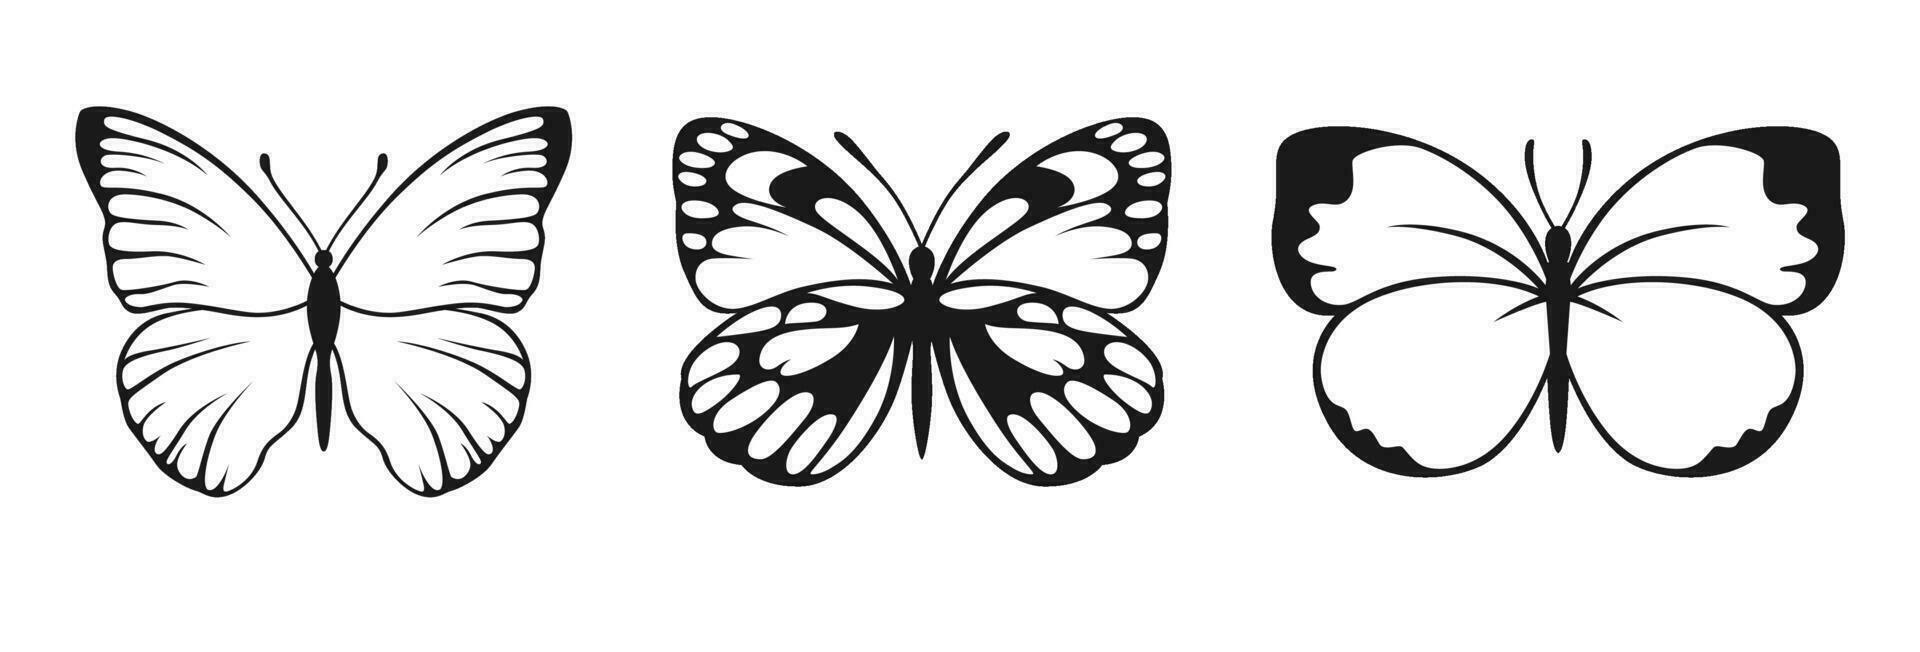 vlinder vector silhouetten. decoratief insect verzameling. gevleugeld dieren illustratie